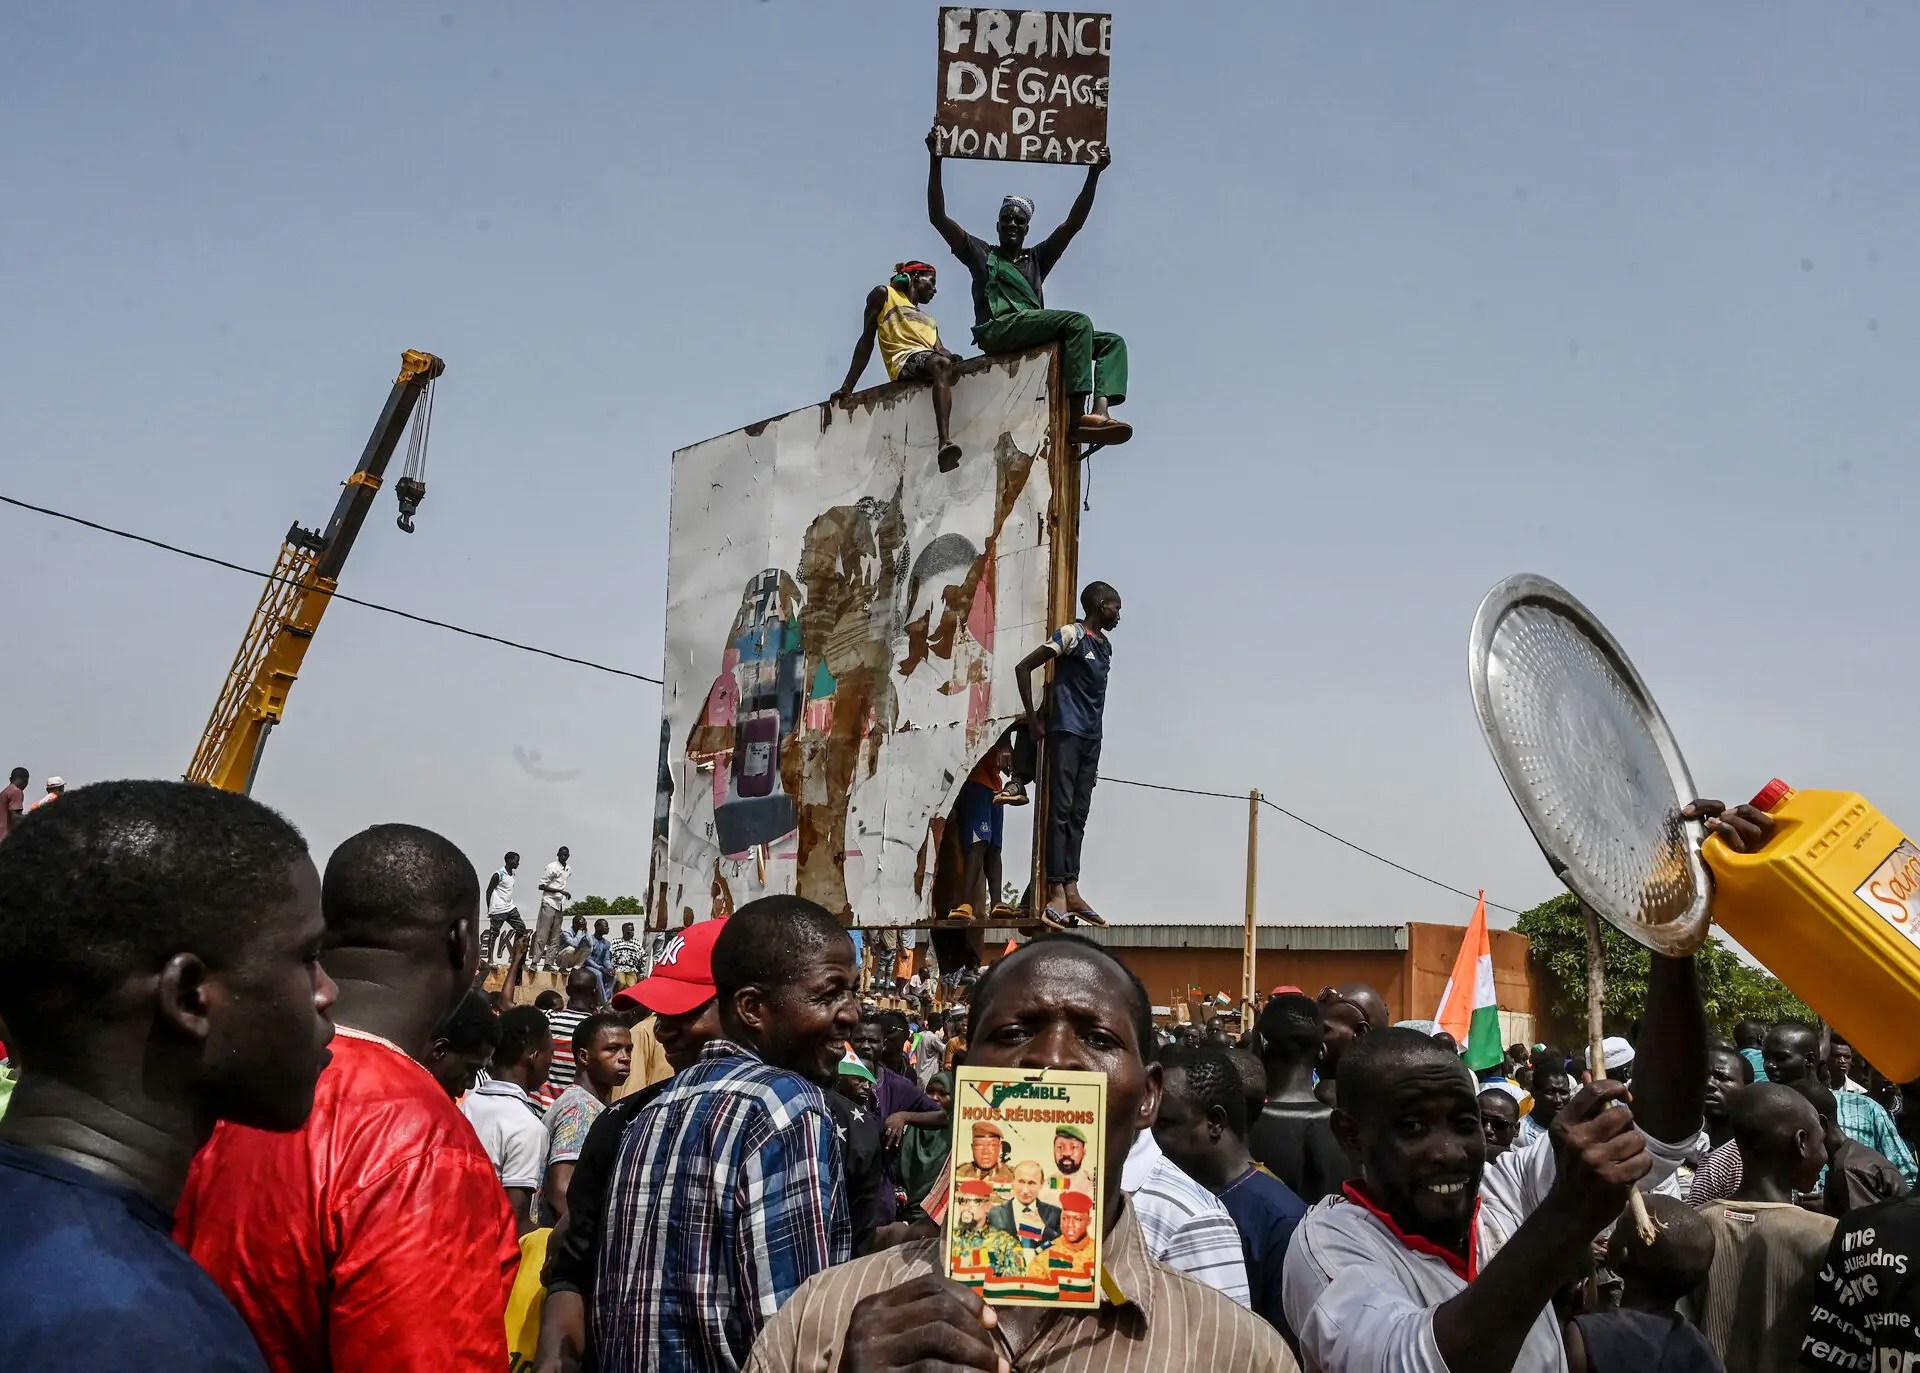 فورين بوليسي: هل هذه نهاية فرنسا أفريقيا؟ | أخبار سياسة – البوكس نيوز